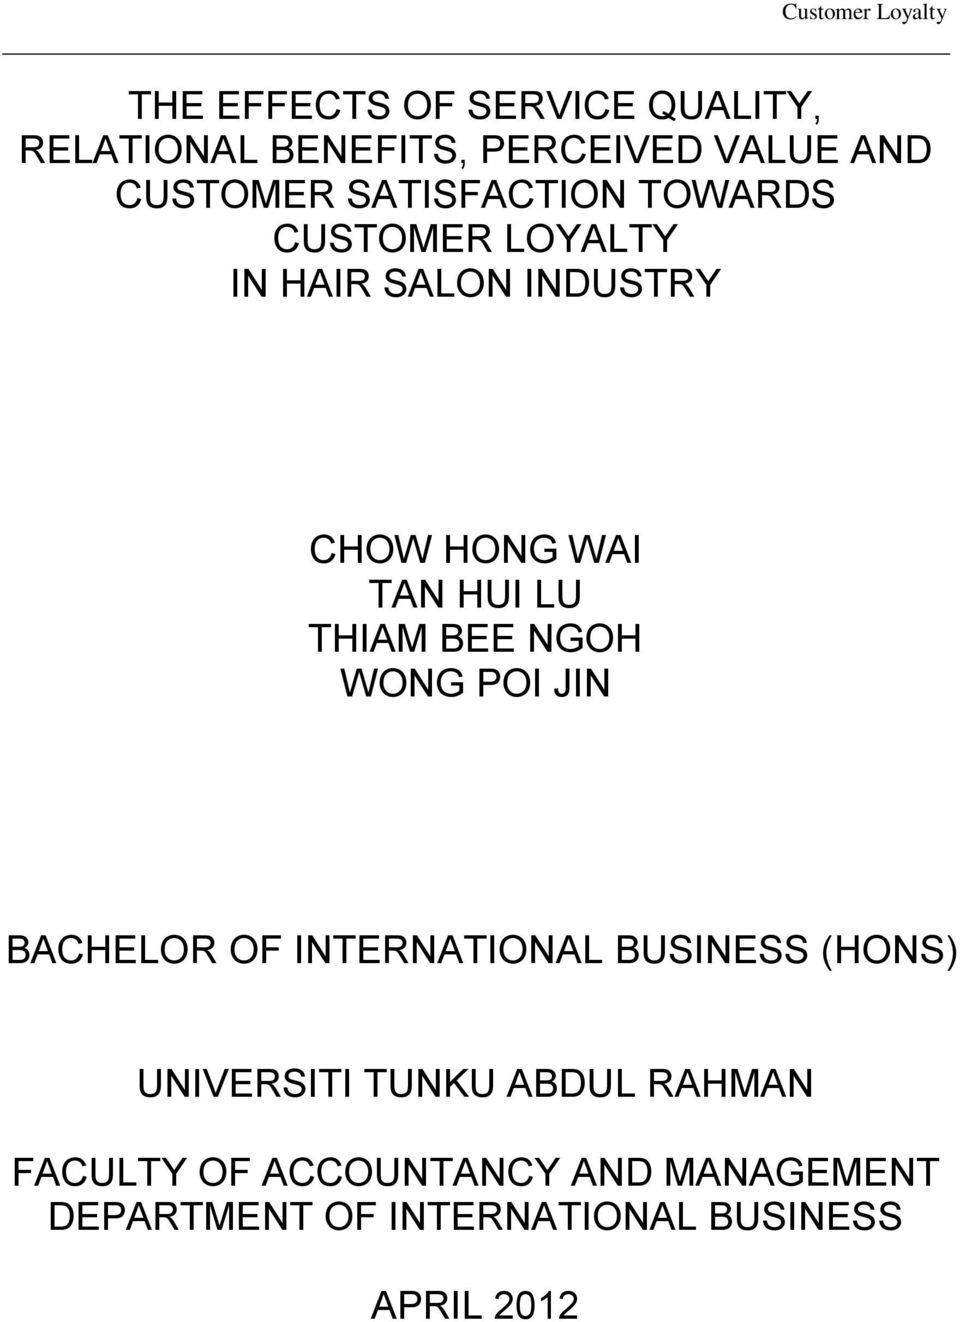 THIAM BEE NGOH WONG POI JIN BACHELOR OF INTERNATIONAL BUSINESS (HONS) UNIVERSITI TUNKU